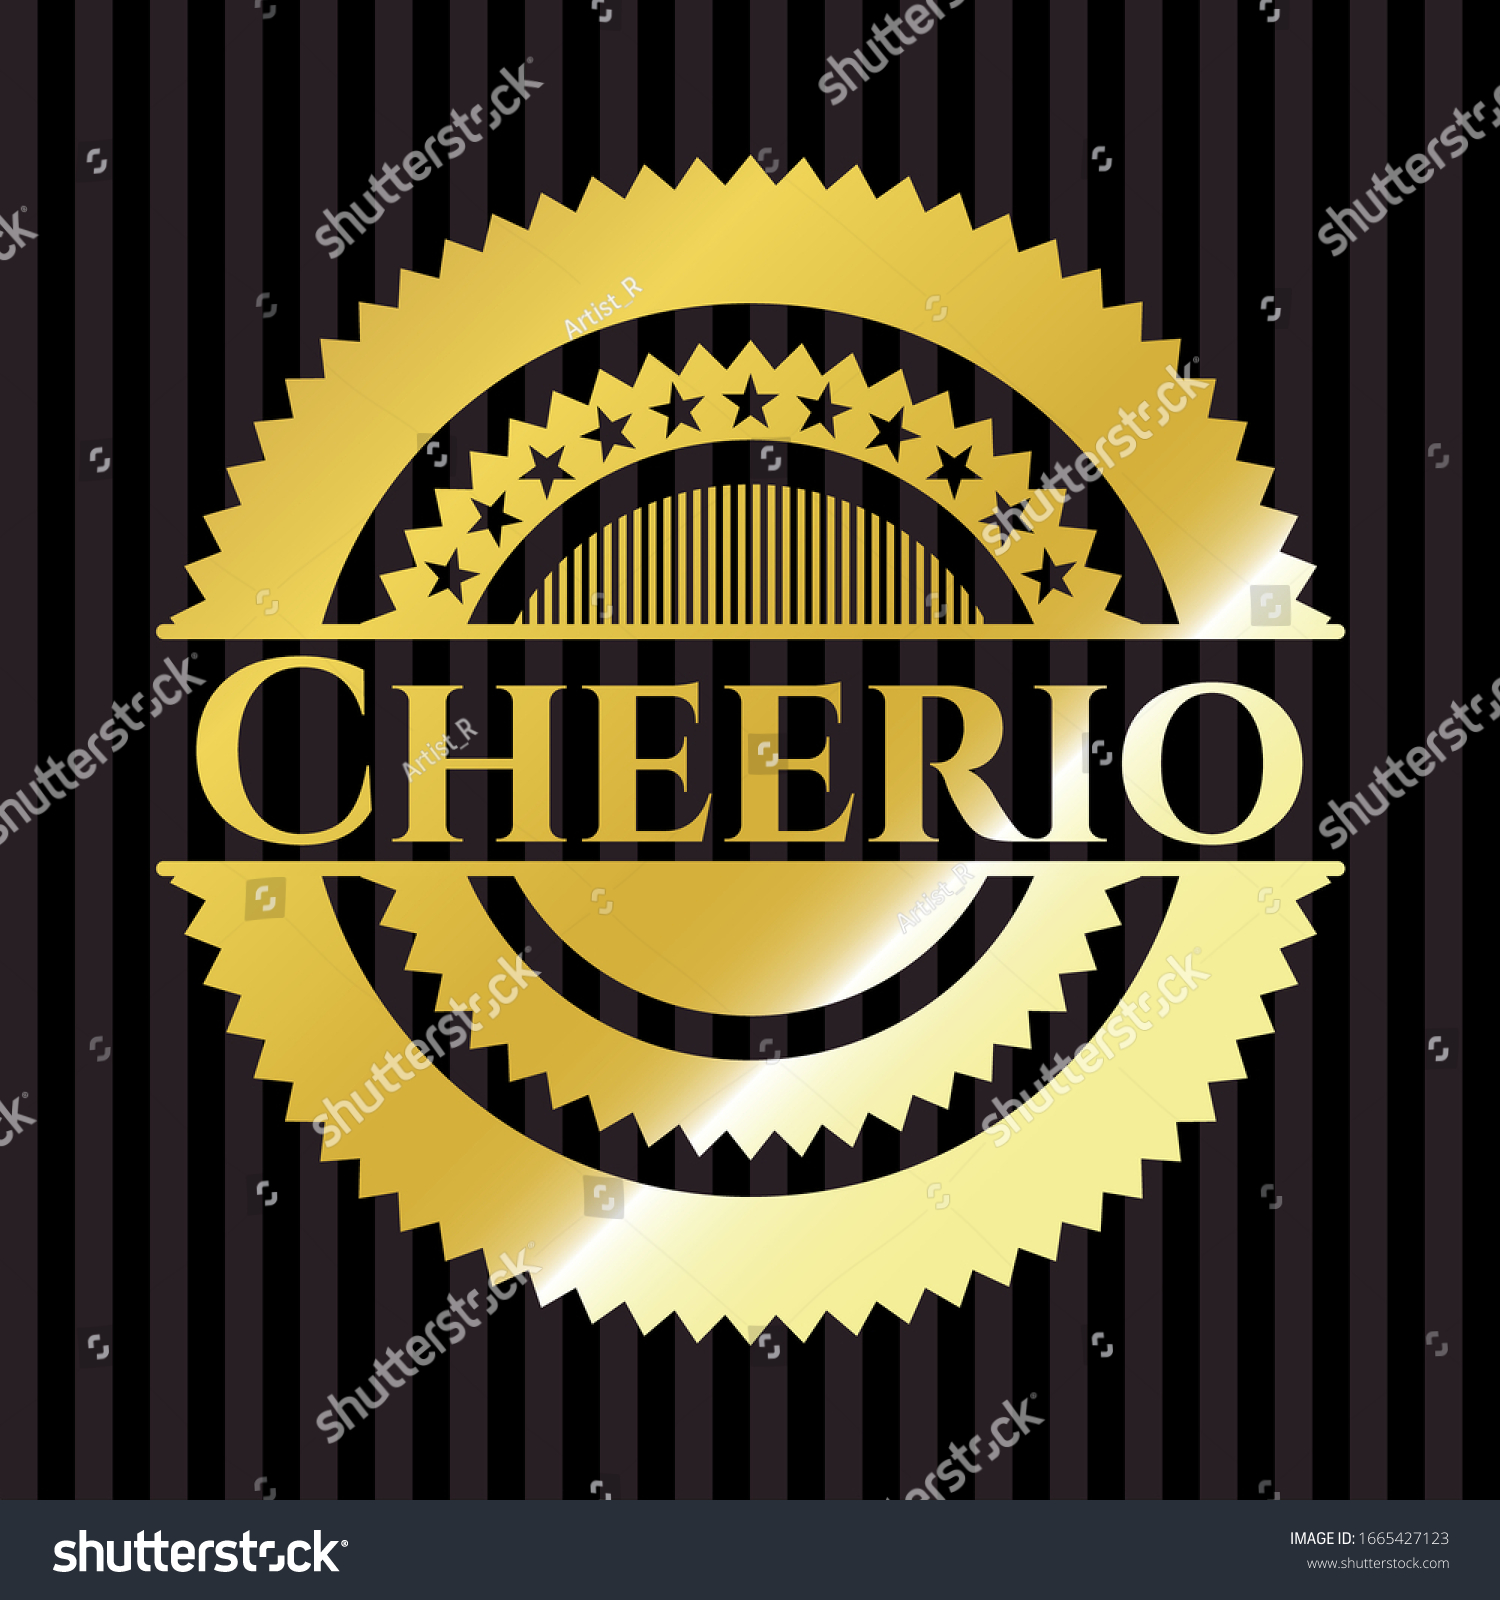 SVG of Cheerio golden badge or emblem. Vector Illustration. Detailed. svg